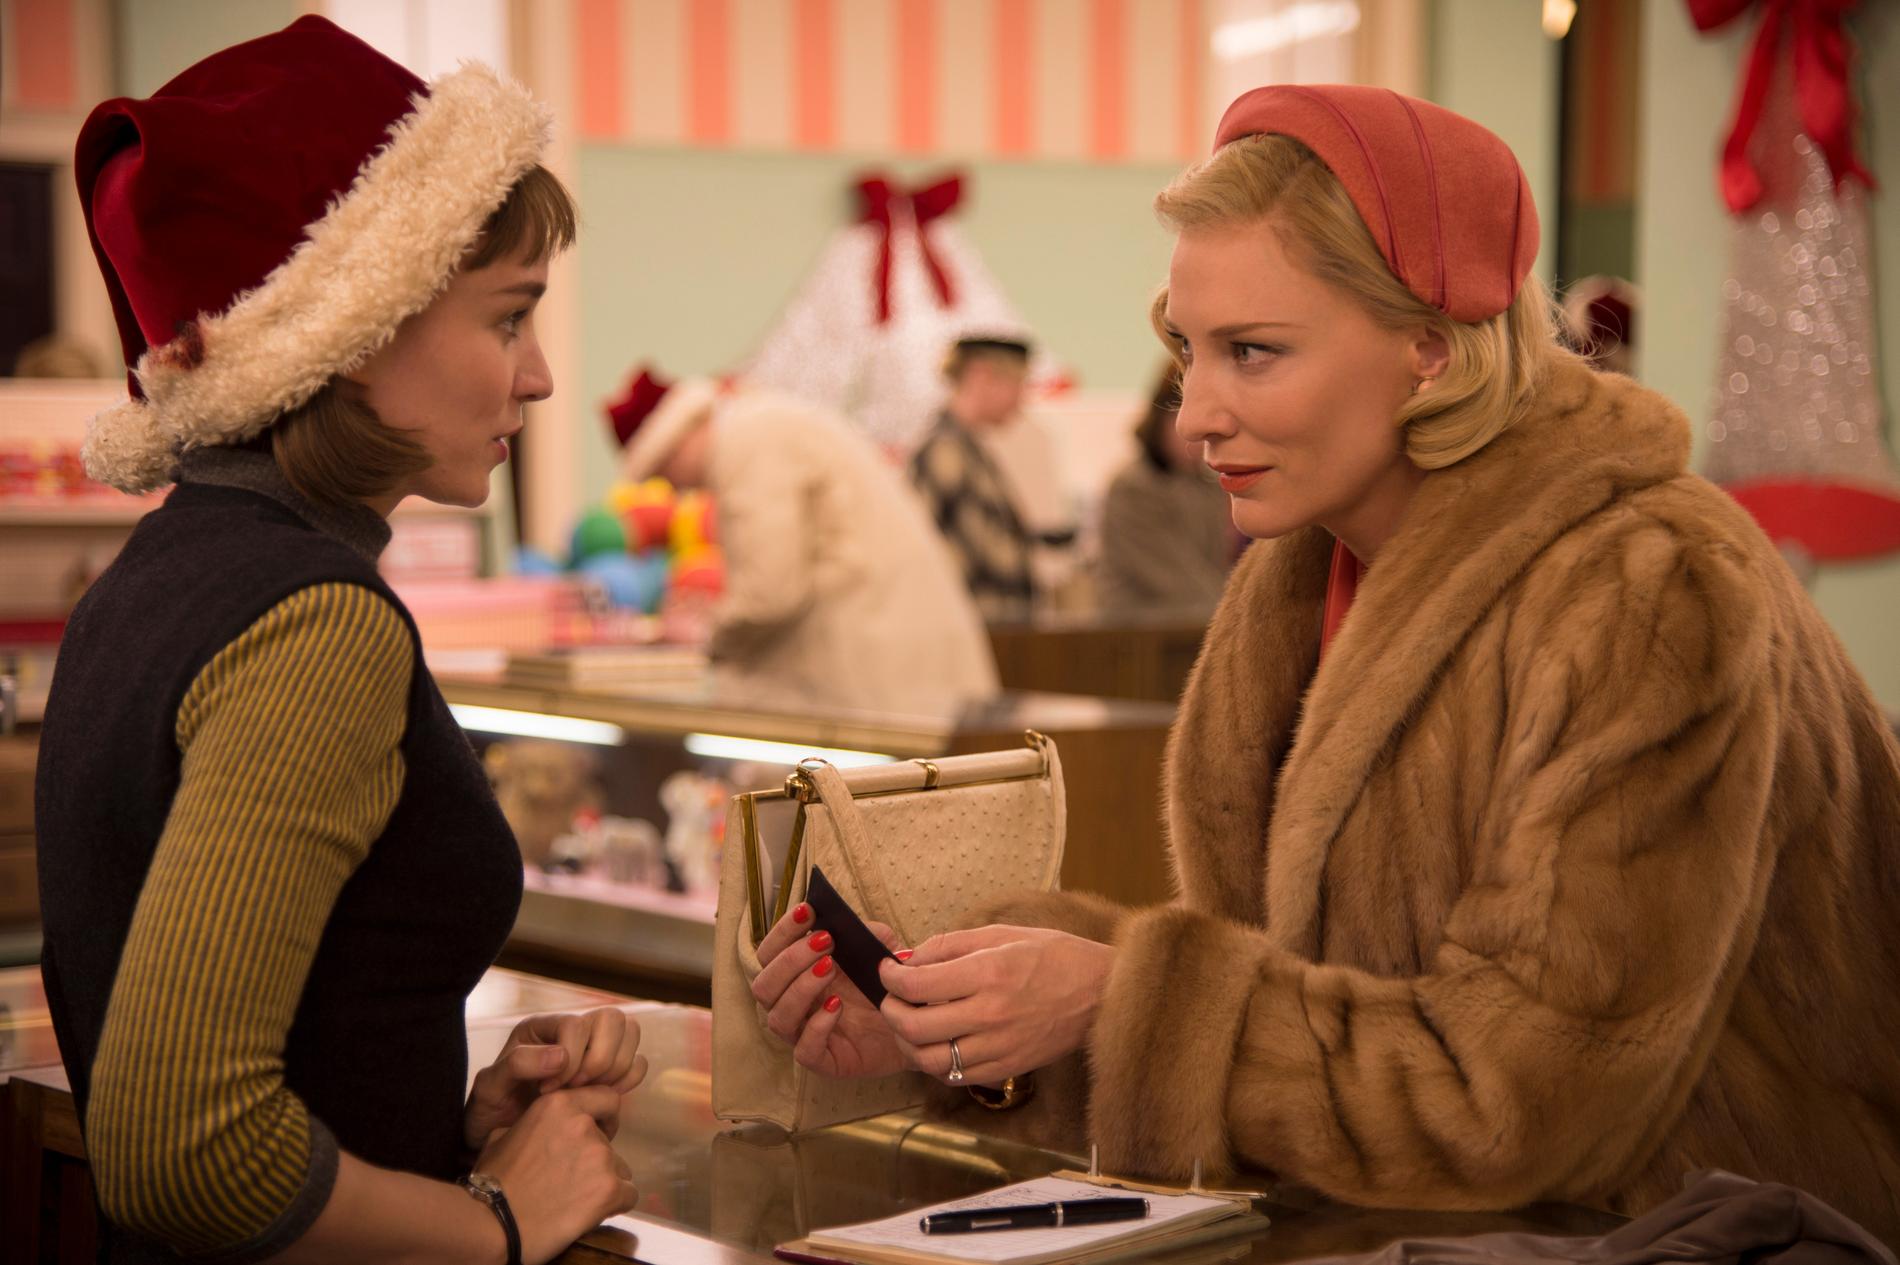 Missa inte den här rullen Rooney Mara och Cate Blanchett spelar två kvinnor som blir kära i varandra i underhållande, välgjorda ”Carol”.